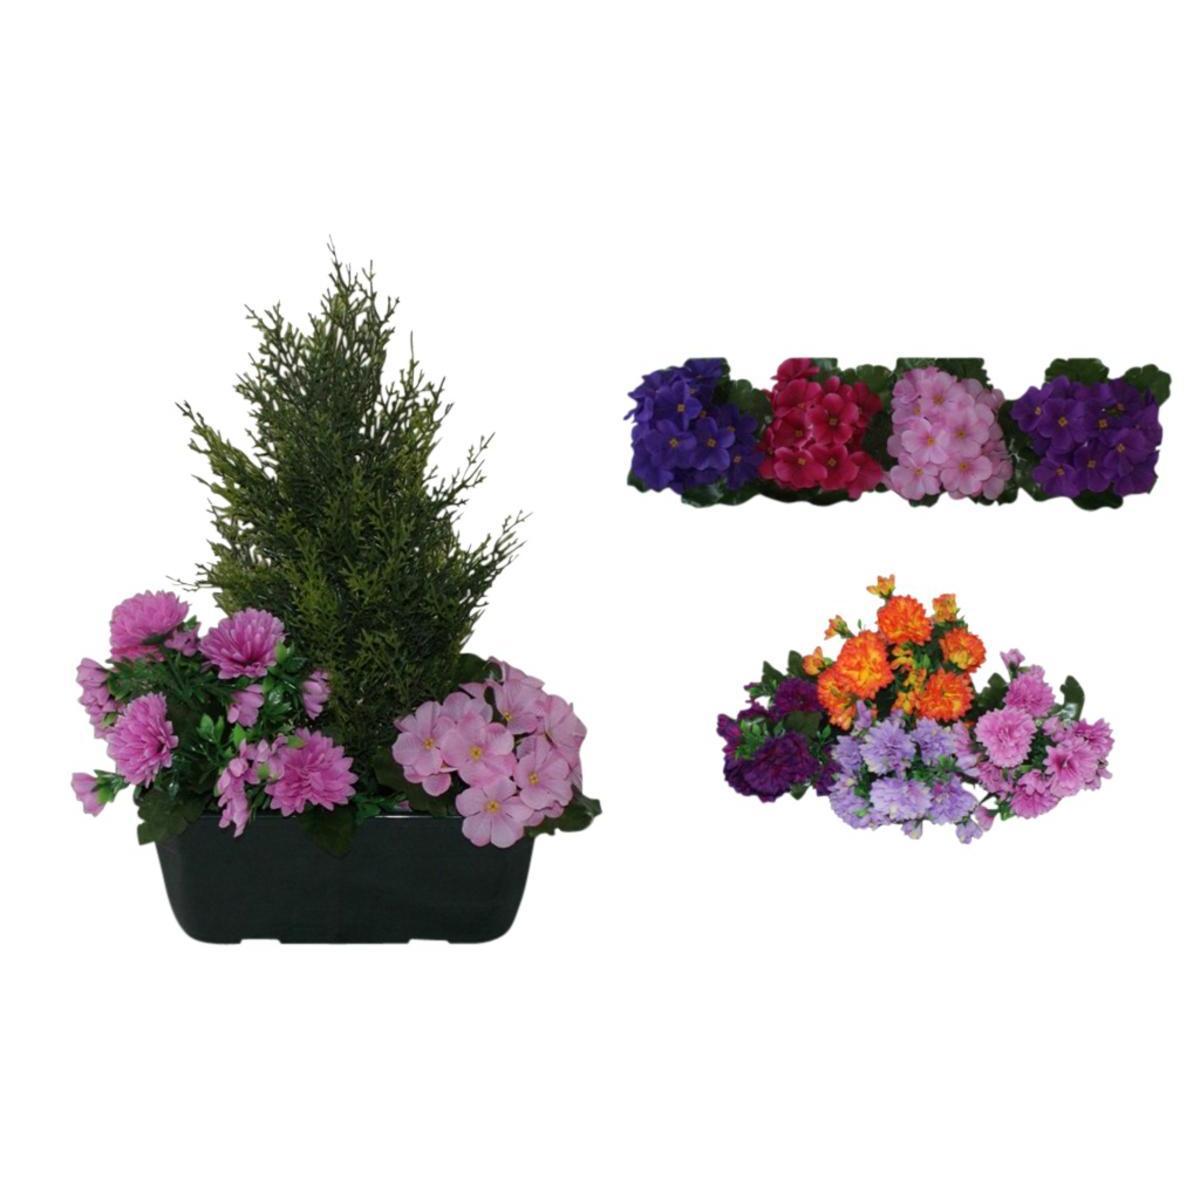 Jardinière de cyprès et chrysanthèmes - Polyester, PVC et béton - H 40 cm - Différents coloris